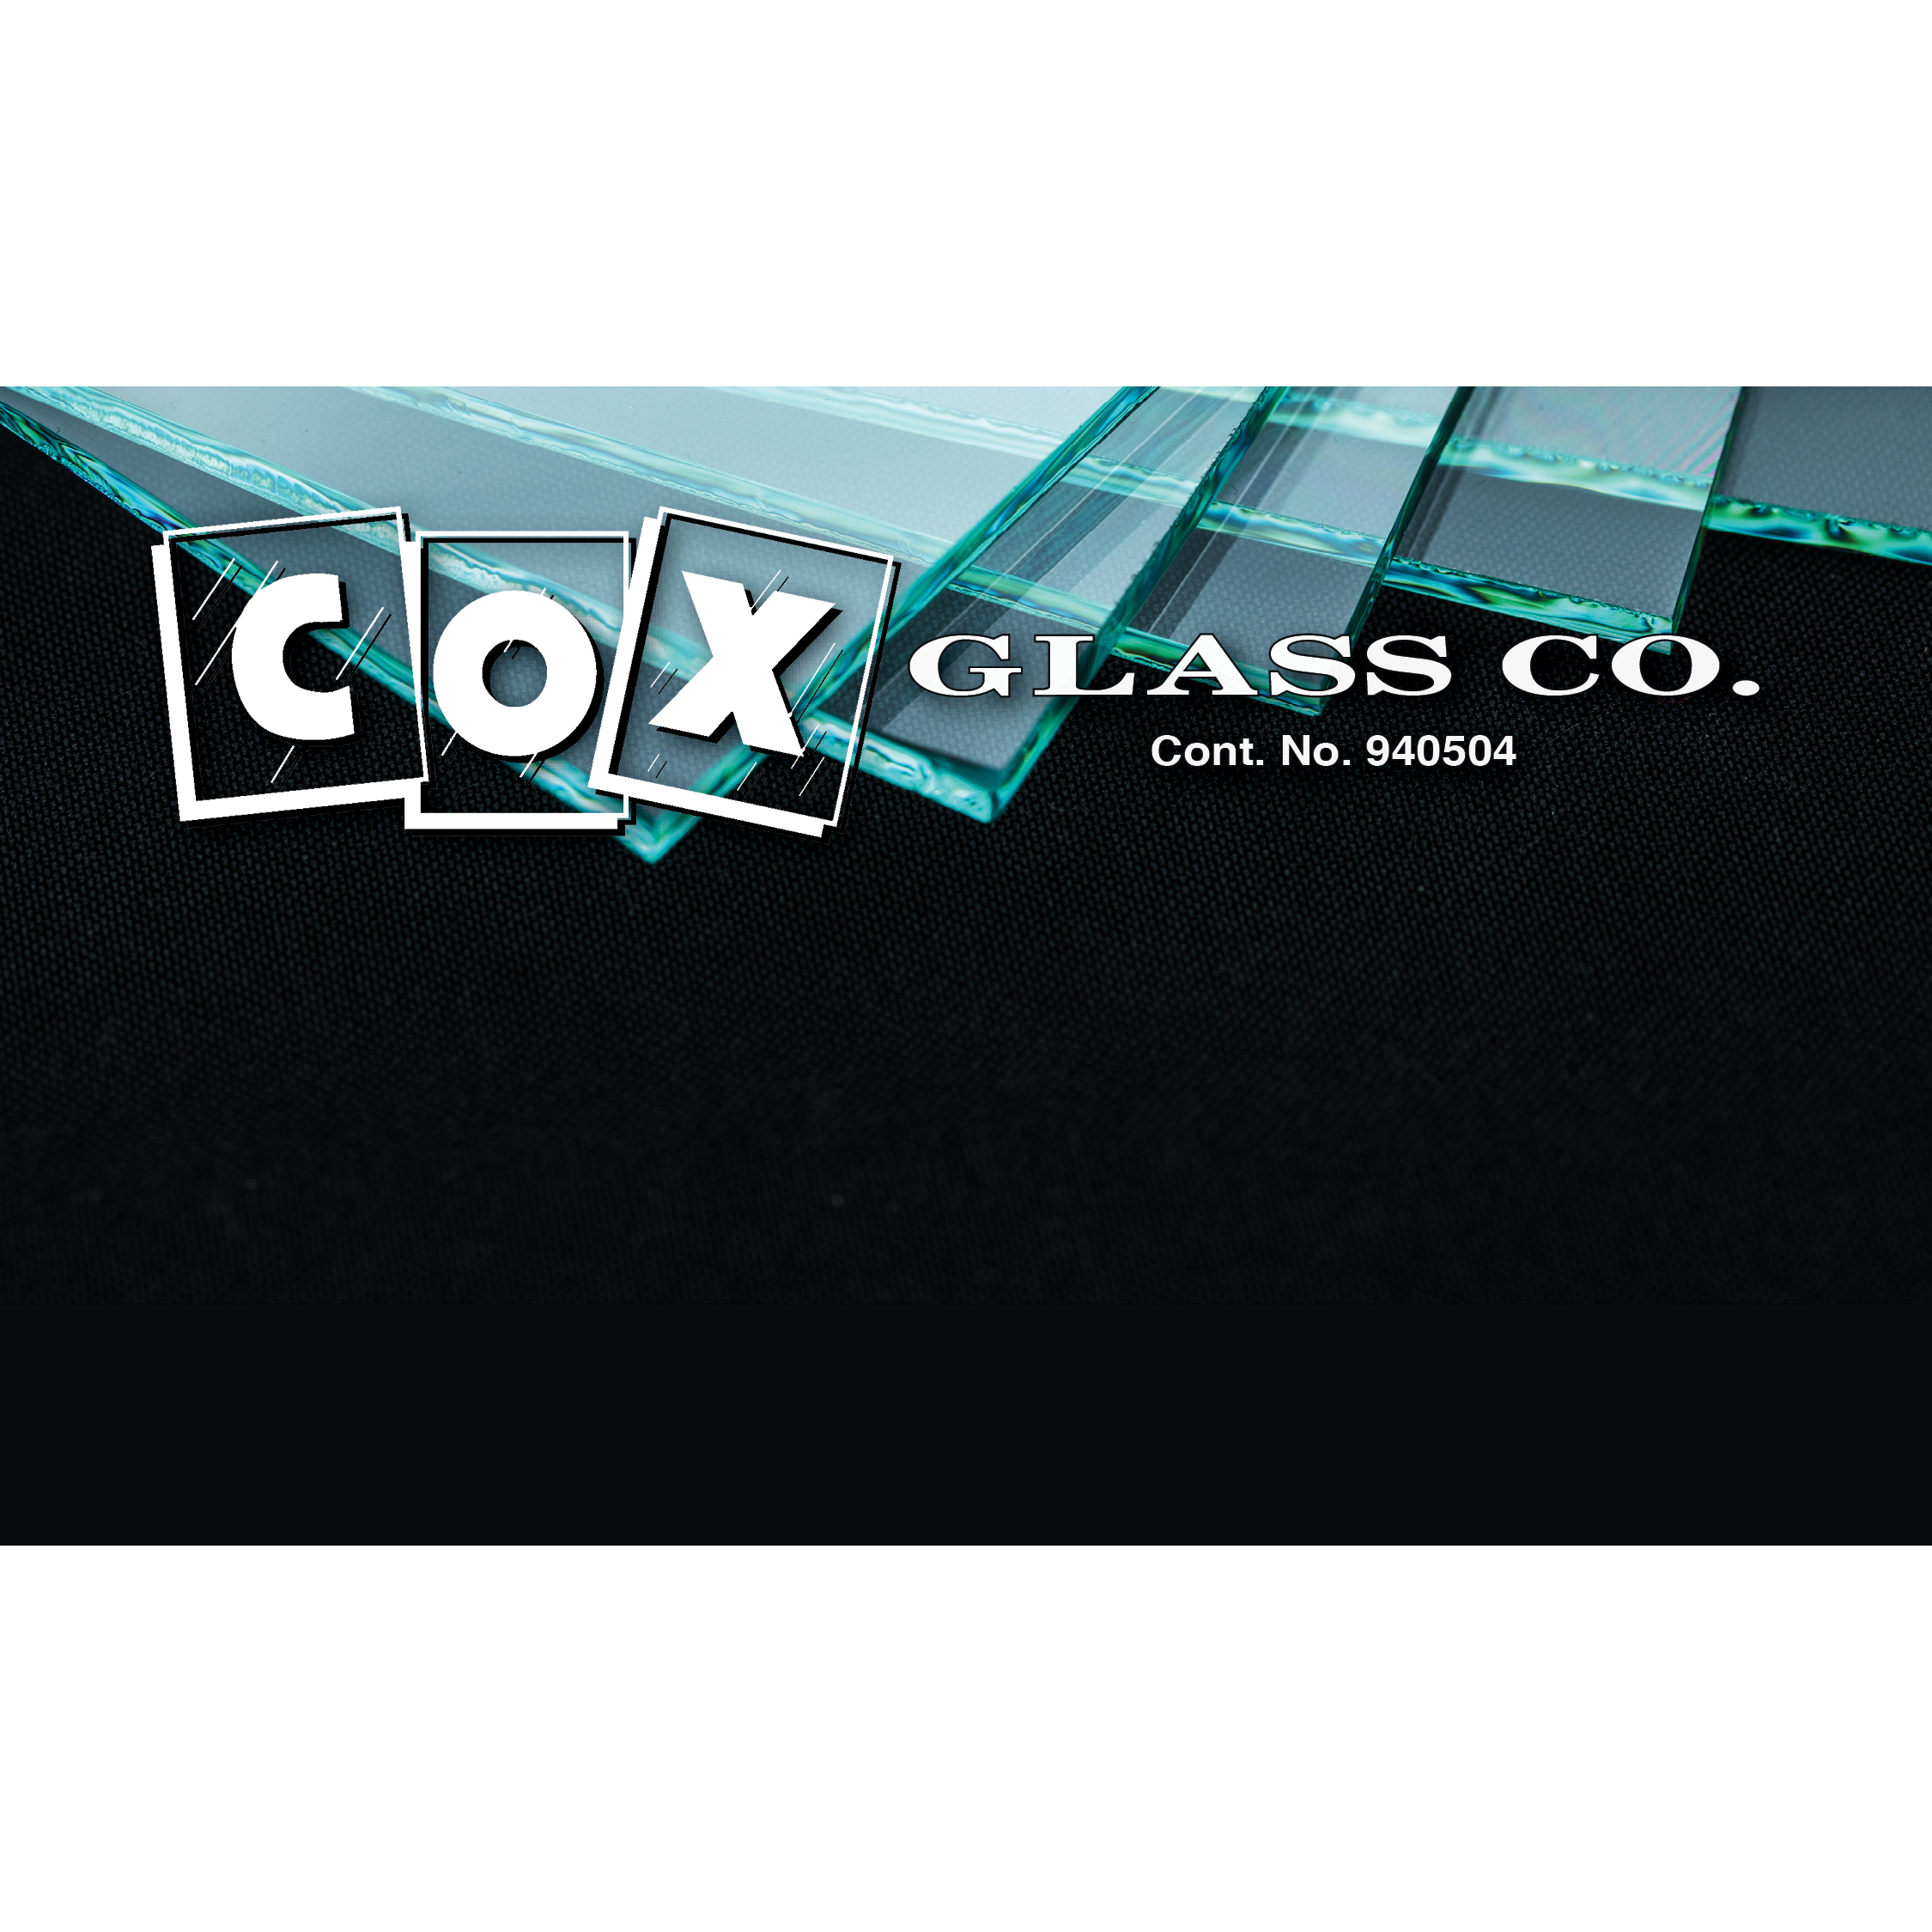 Cox Glass Co - Oroville, CA 95966 - (530)533-1166 | ShowMeLocal.com